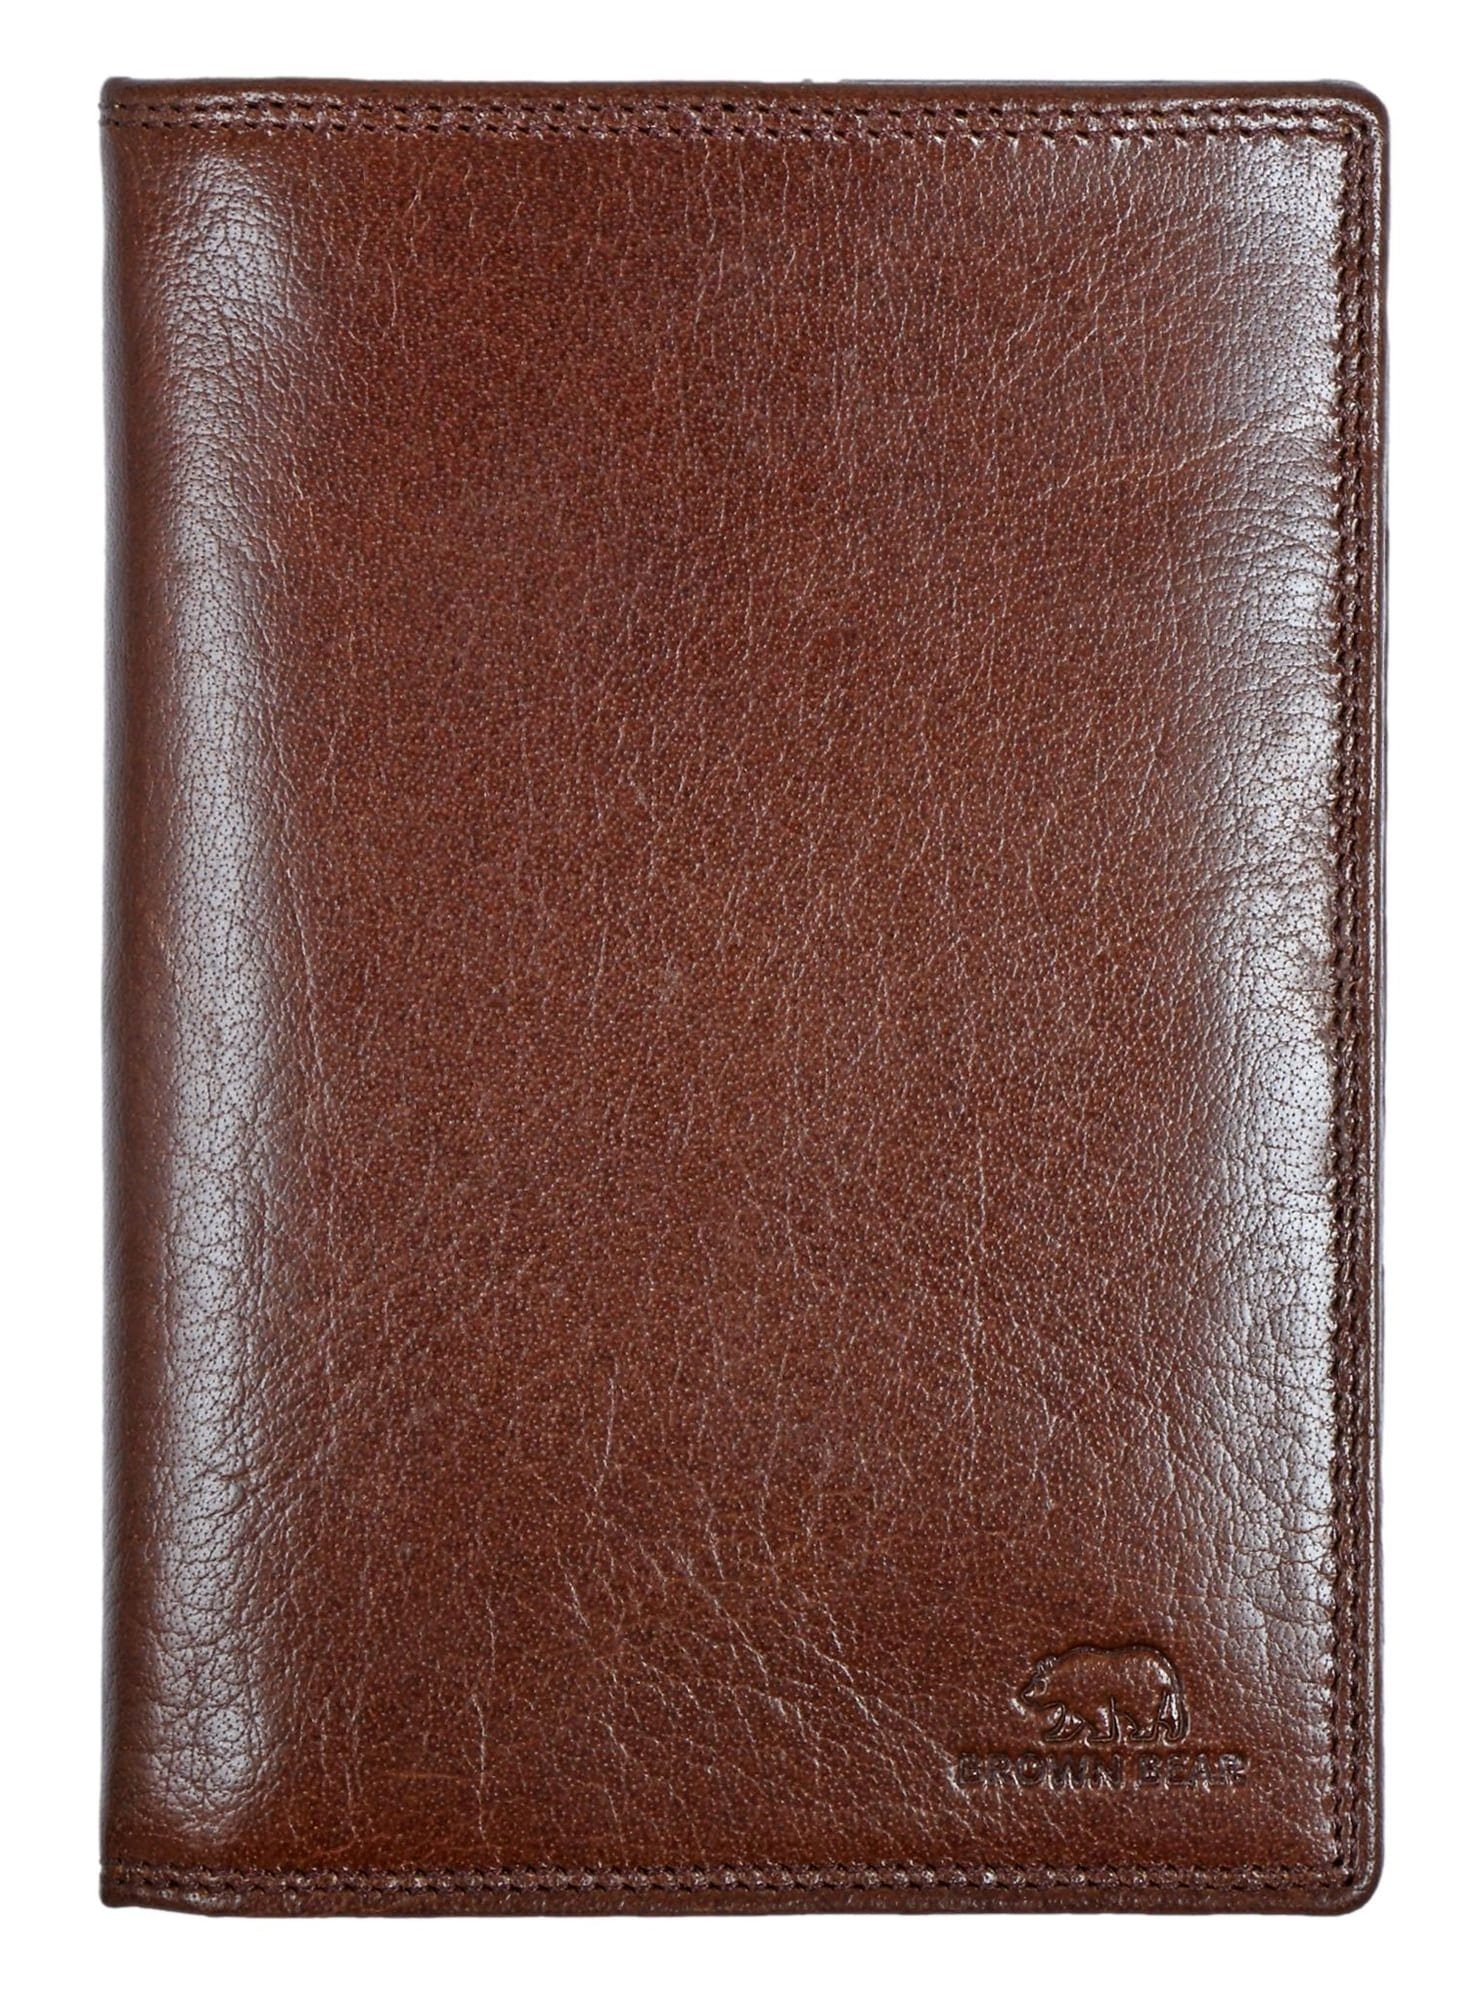 Brown Bear Brieftasche Classic 8013 ohne Münzfach 13 Kartenfächer Echtleder, 5 Ausweisfächer RFID Schutz Sichtfächer Braun Braun Toscana